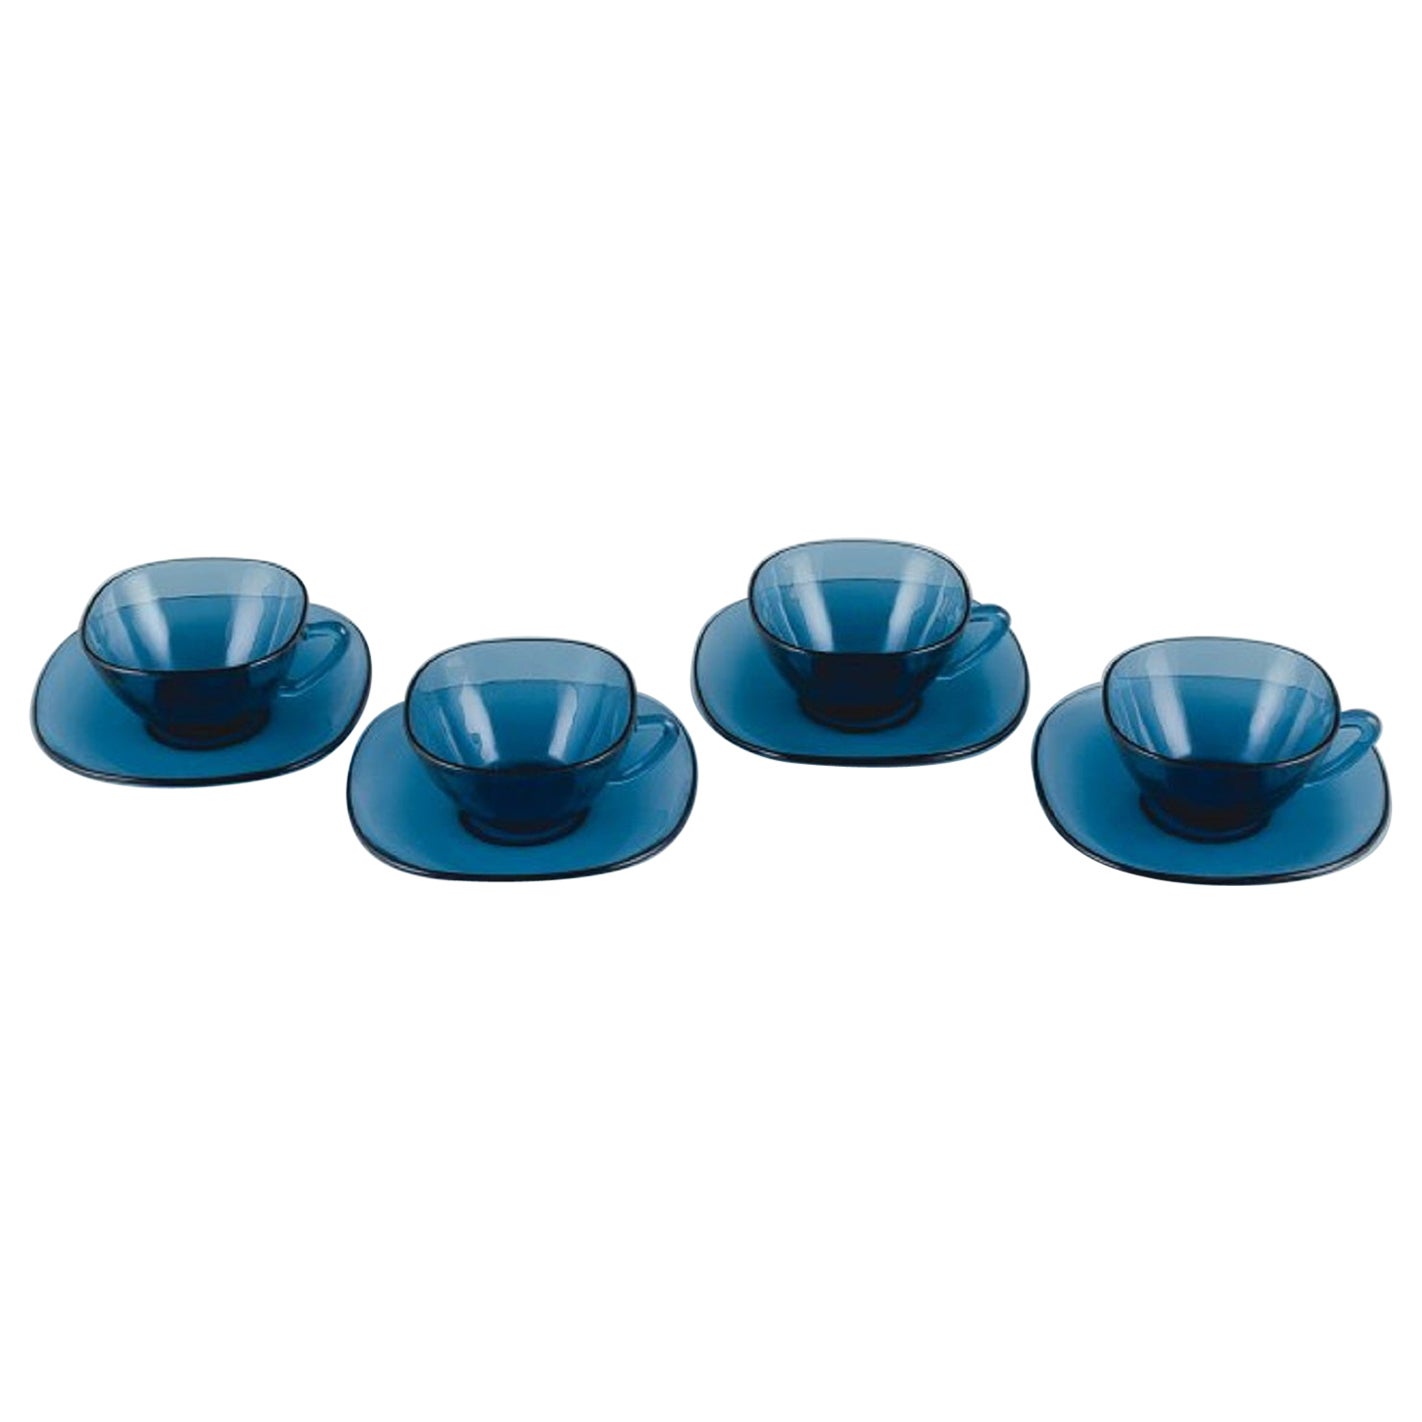 Vereco, Frankreich, ein Set aus vier Teebechern und passenden Untertassen aus blauem Glas. 